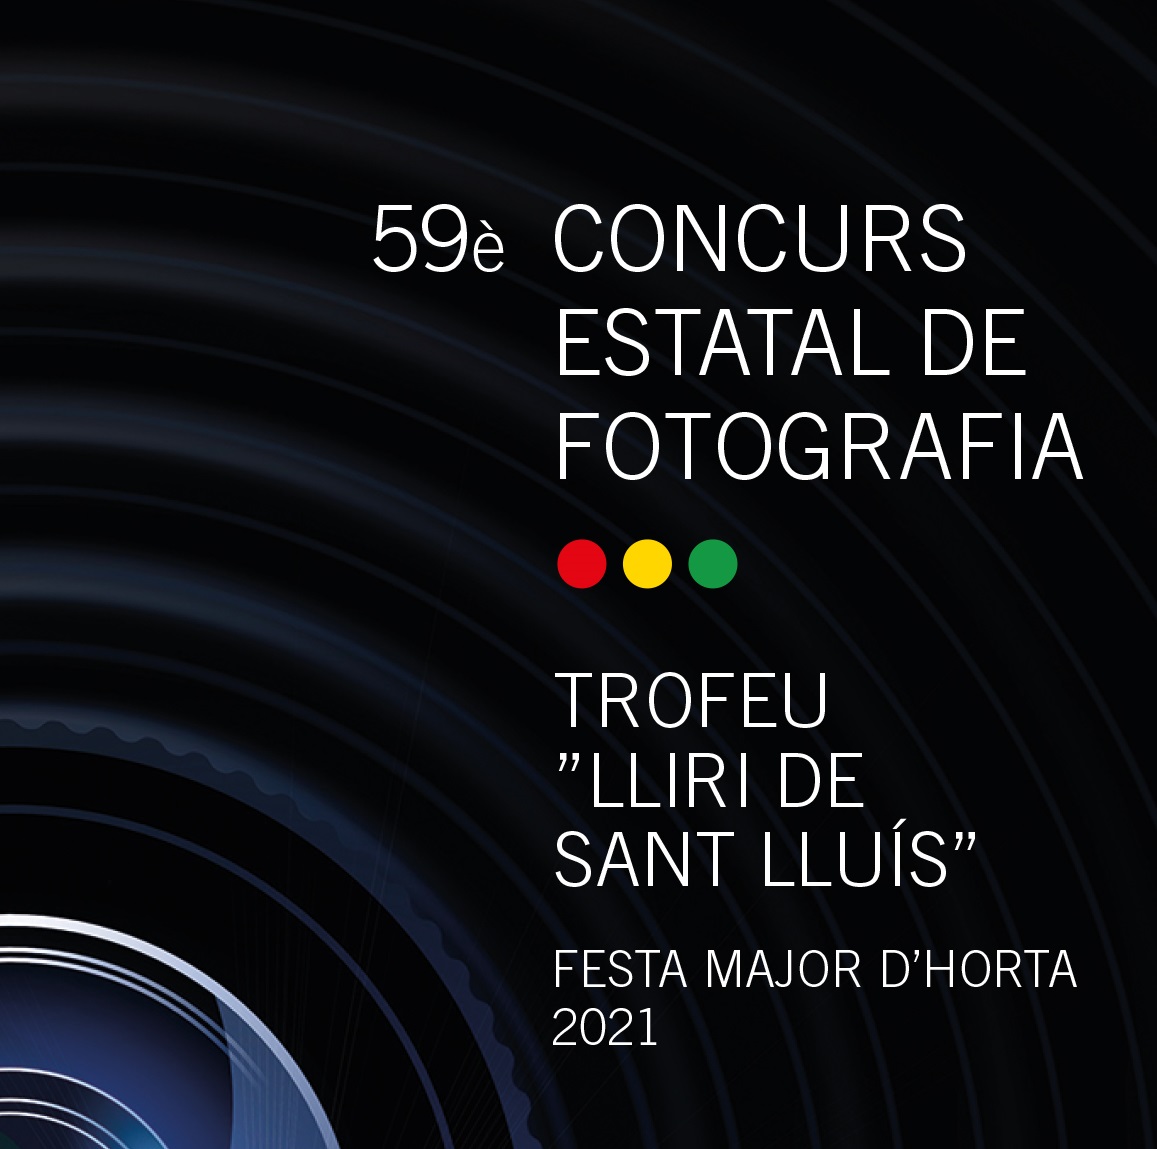 59è Concurs Estatal de Fotografia - Trofeu Lliri de Sant Lluís